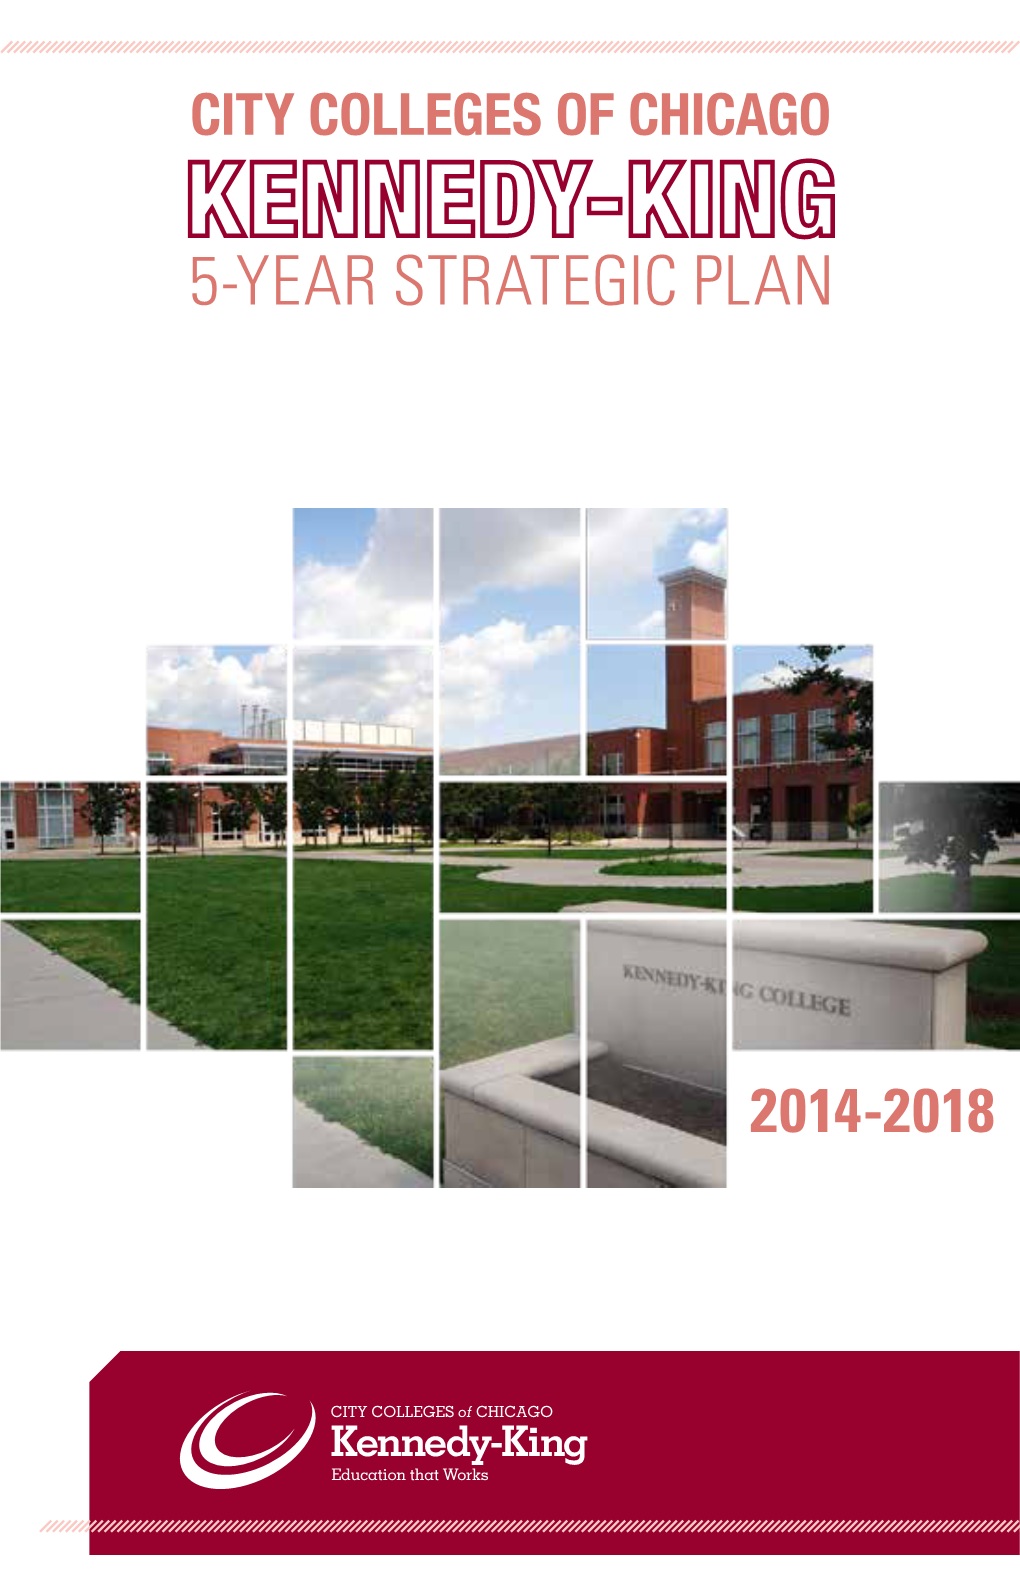 Kennedy-King College 5-Year Strategic Plan.Pdf